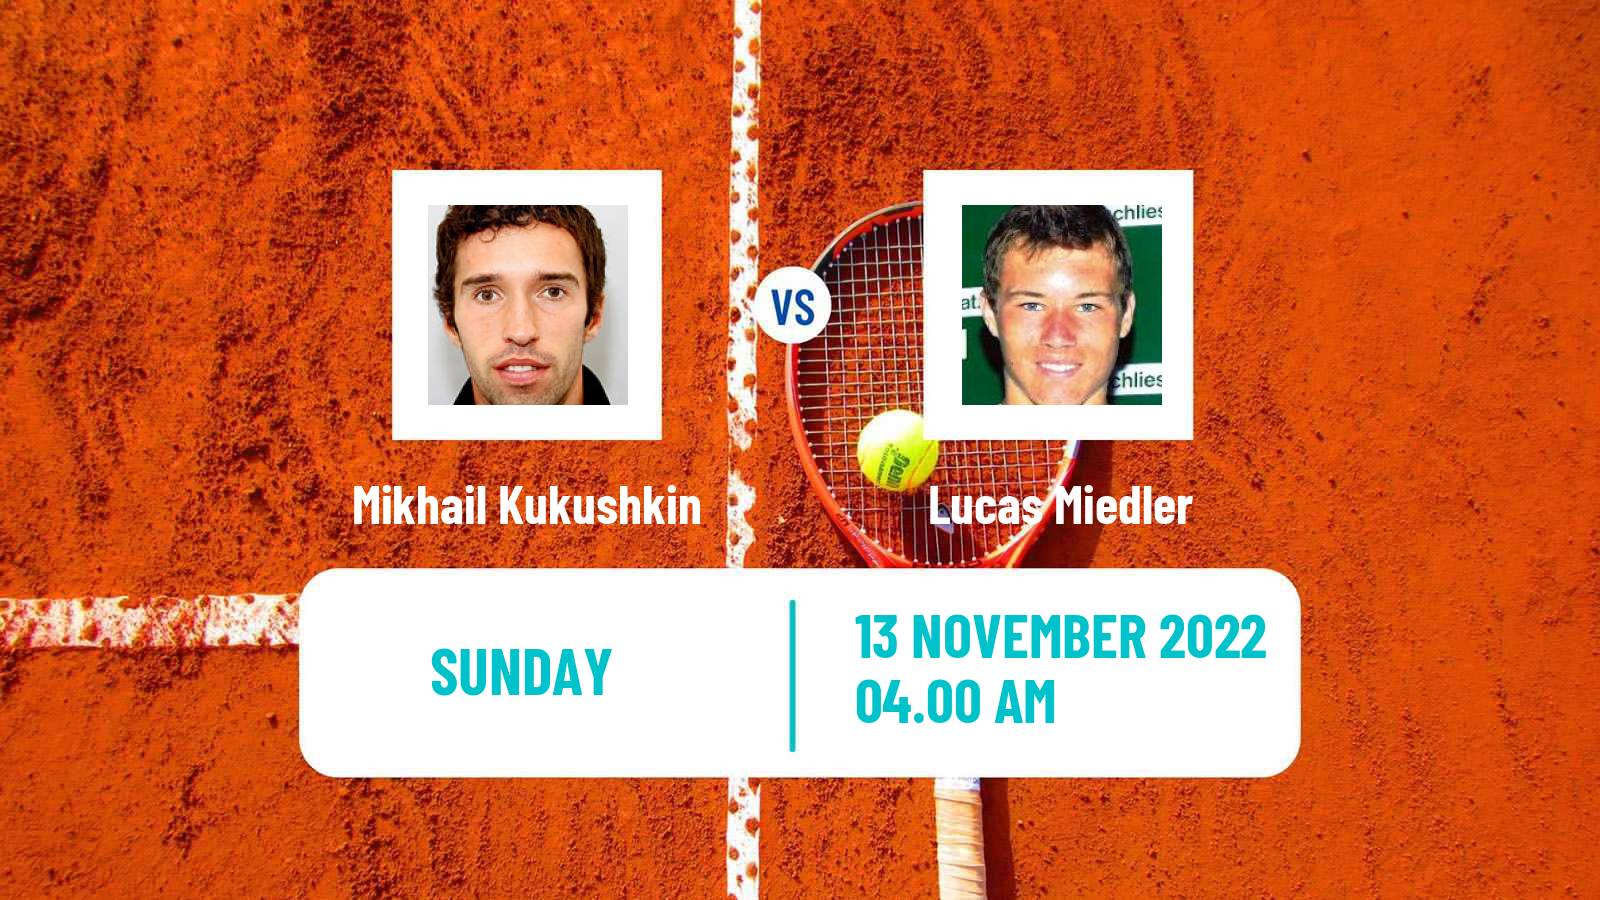 Tennis ATP Challenger Mikhail Kukushkin - Lucas Miedler